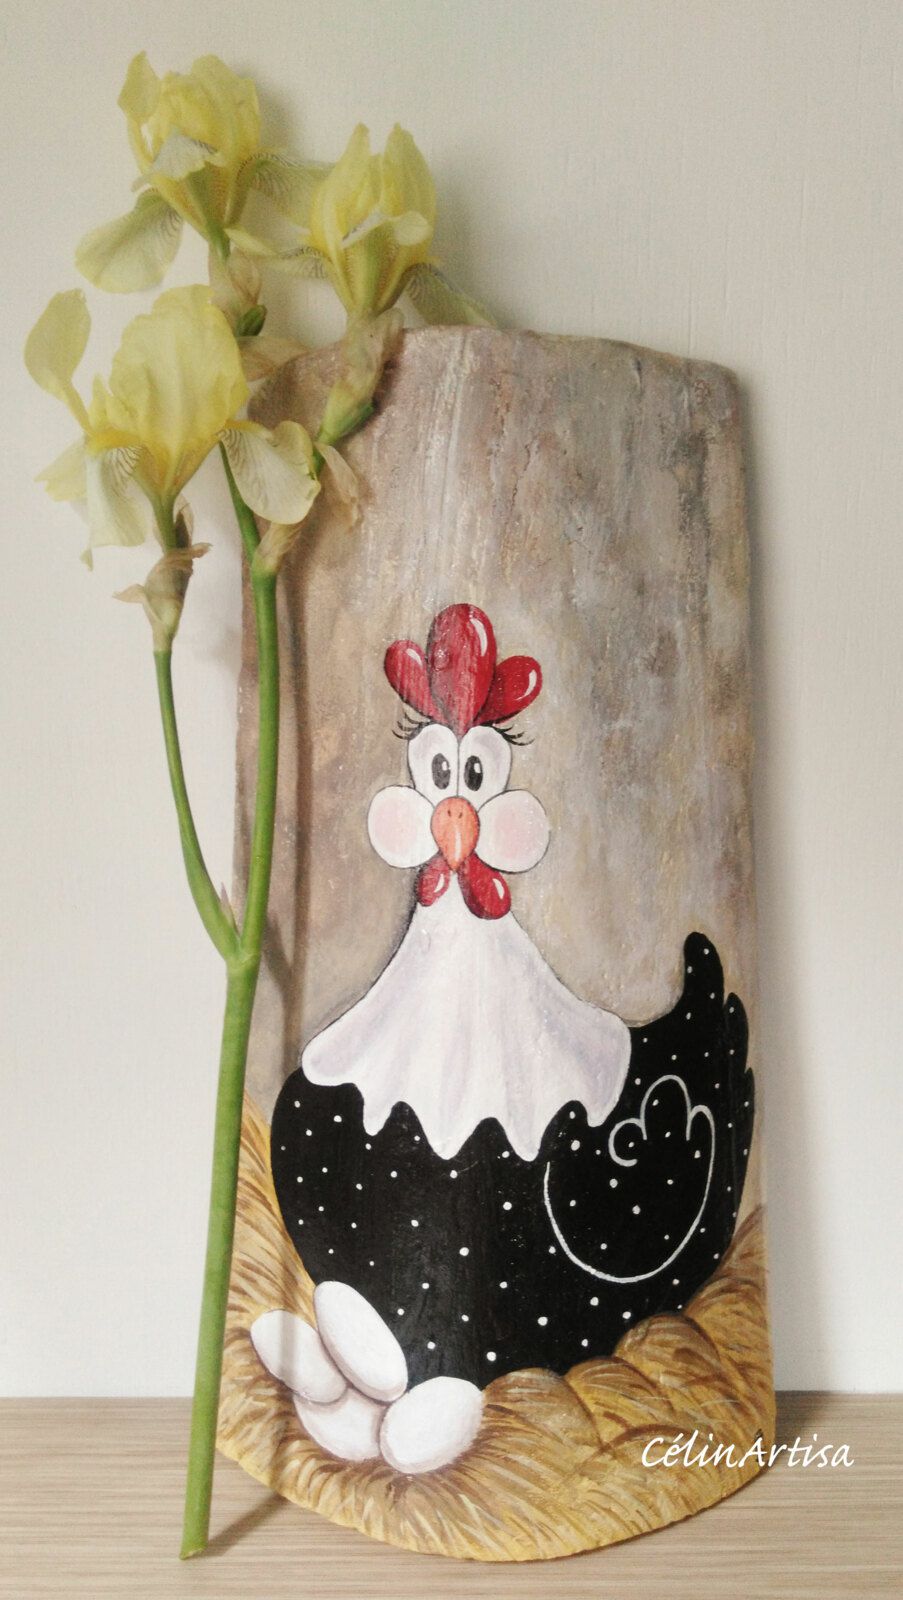 poule pondeuse peinte sur une tuile en argile (acrylique)